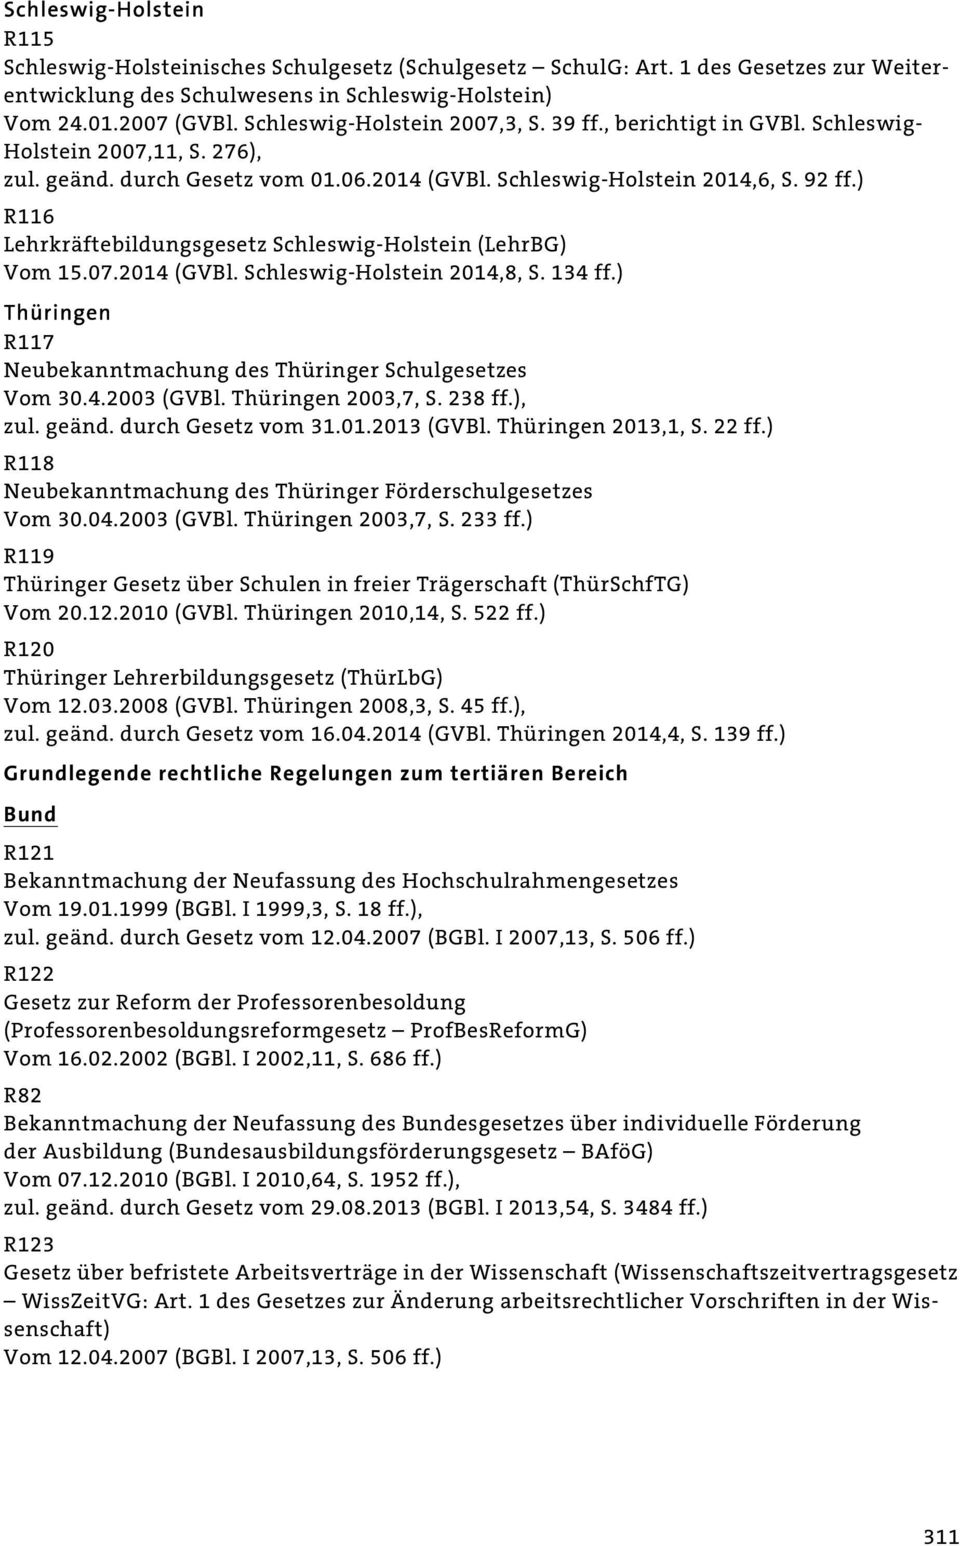 ) R116 Lehrkräftebildungsgesetz Schleswig-Holstein (LehrBG) Vom 15.07.2014 (GVBl. Schleswig-Holstein 2014,8, S. 134 ff.) Thüringen R117 Neubekanntmachung des Thüringer Schulgesetzes Vom 30.4.2003 (GVBl.